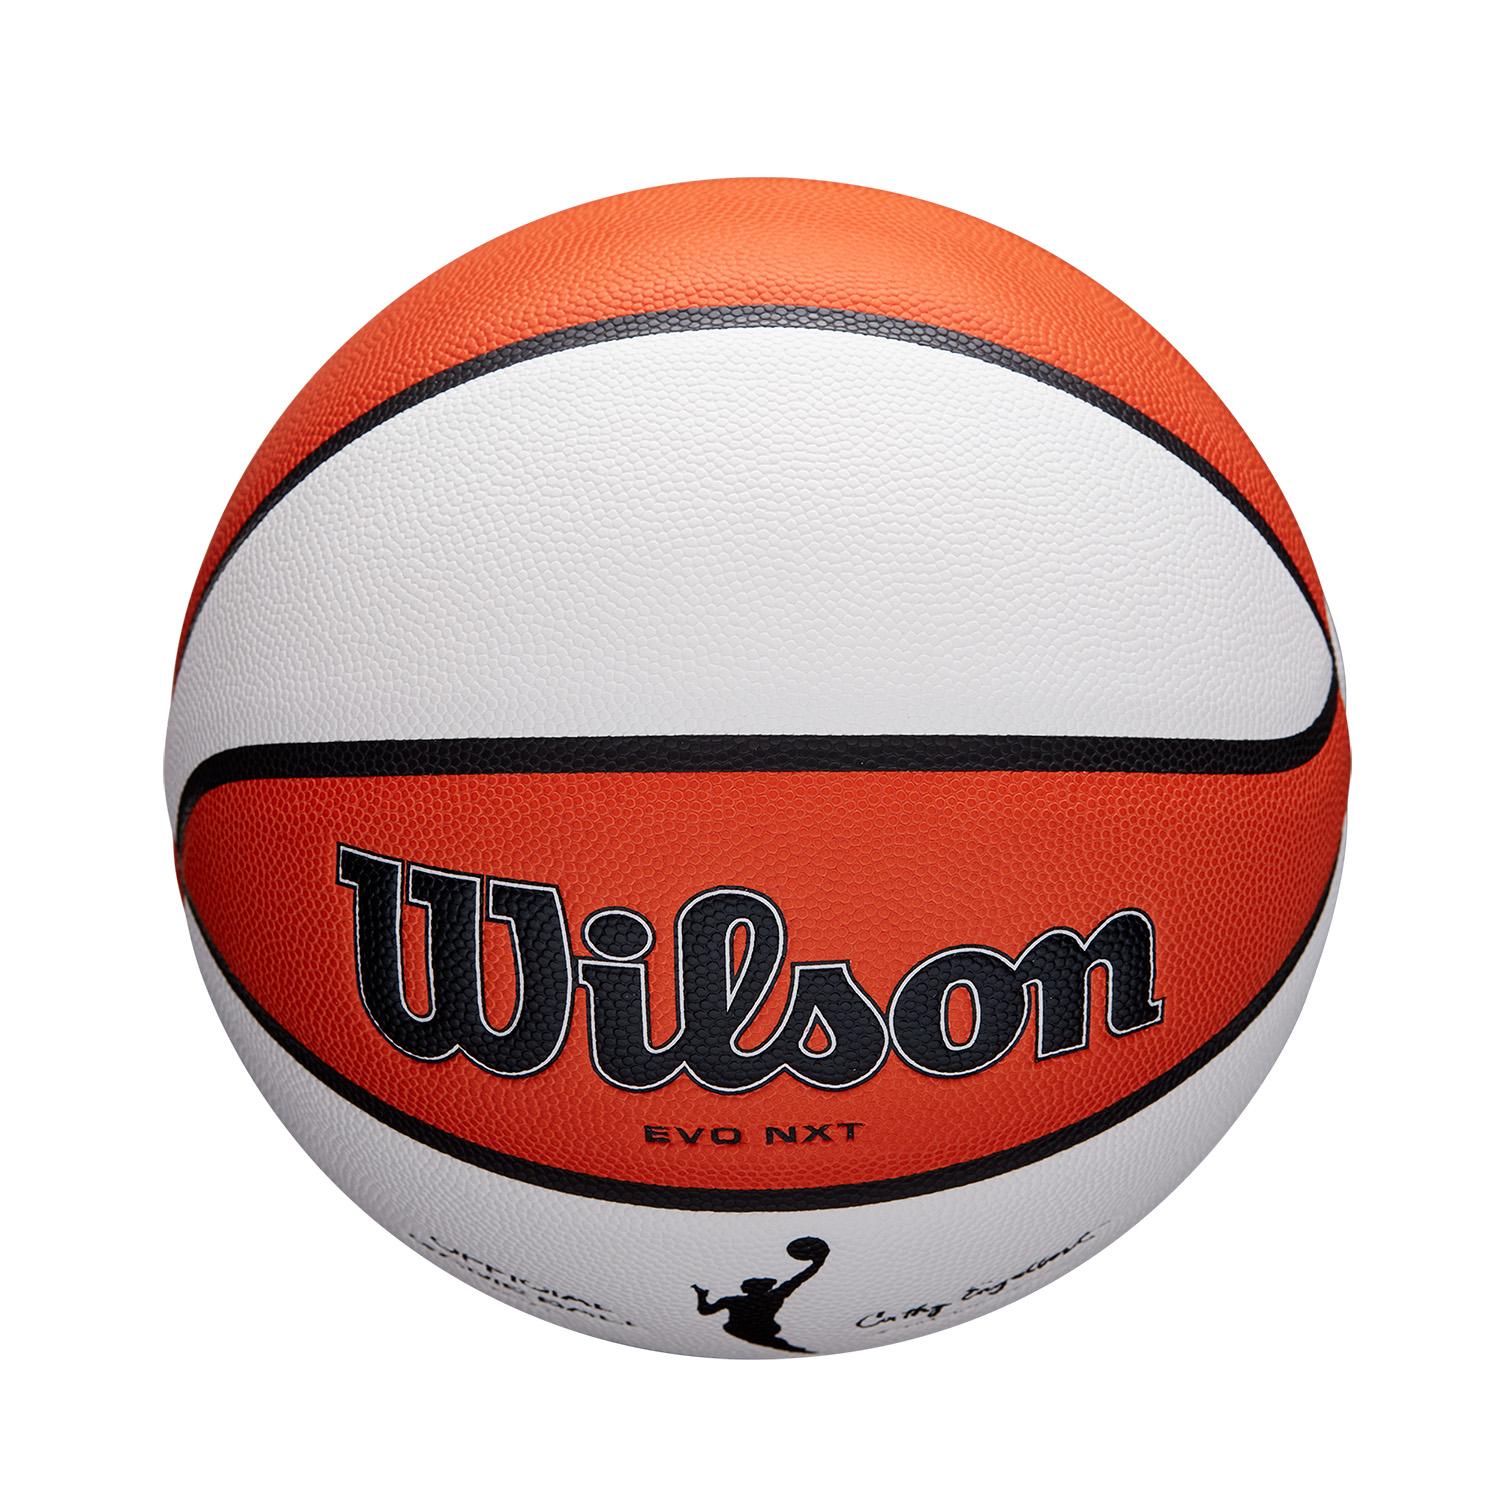 Balón WNBA Official Game Ball